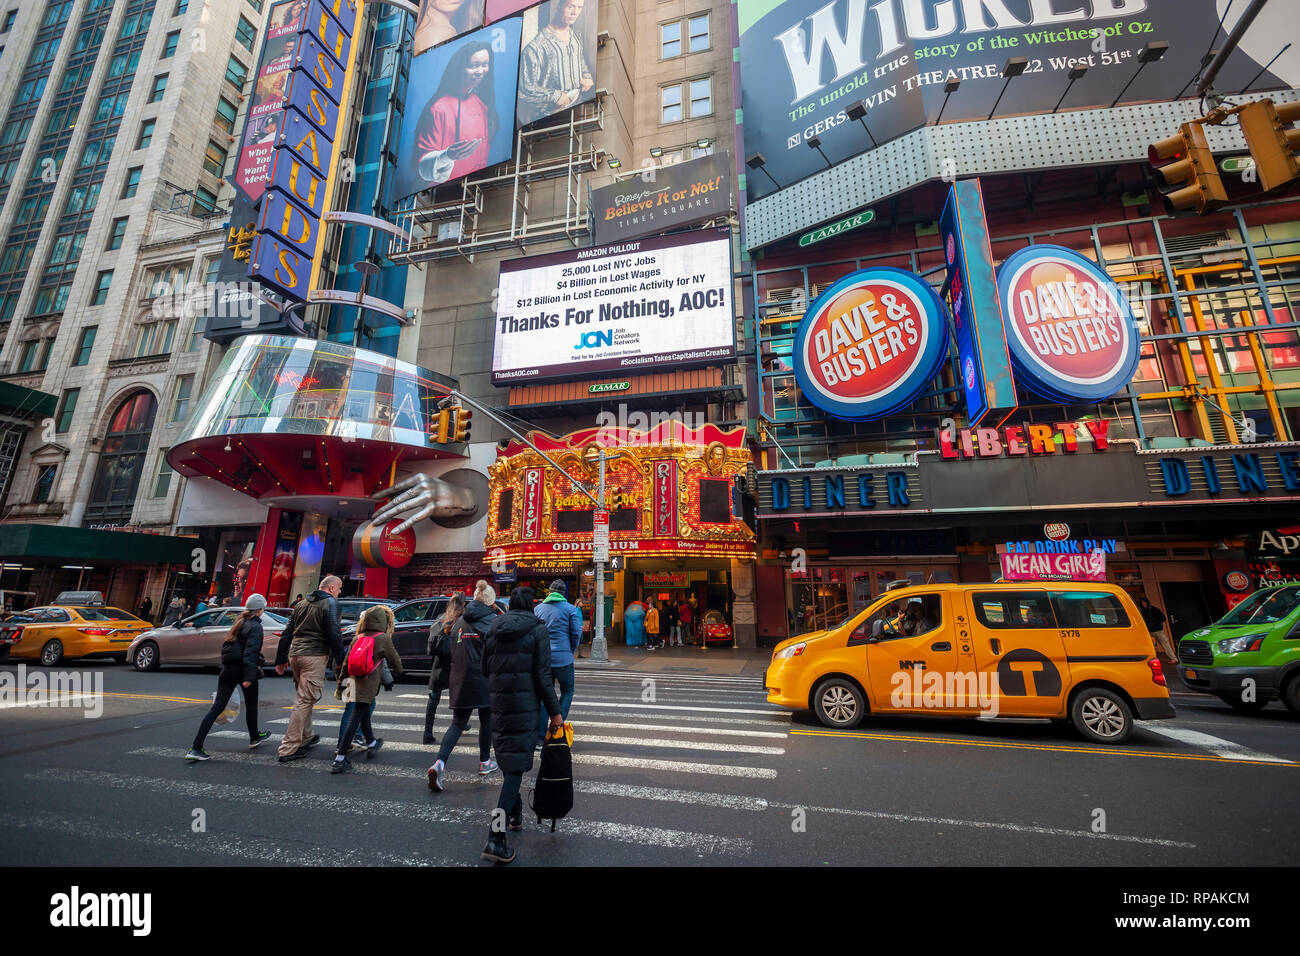 New York, Stati Uniti d'America. 21 feb 2019. Un tabellone elettronico in  Times Square a New York il giovedì, 21 febbraio 2019 chastises Alessandria  Ocasio-Cortez (AOC) (D-NY) per schiacciamento la trattativa tra